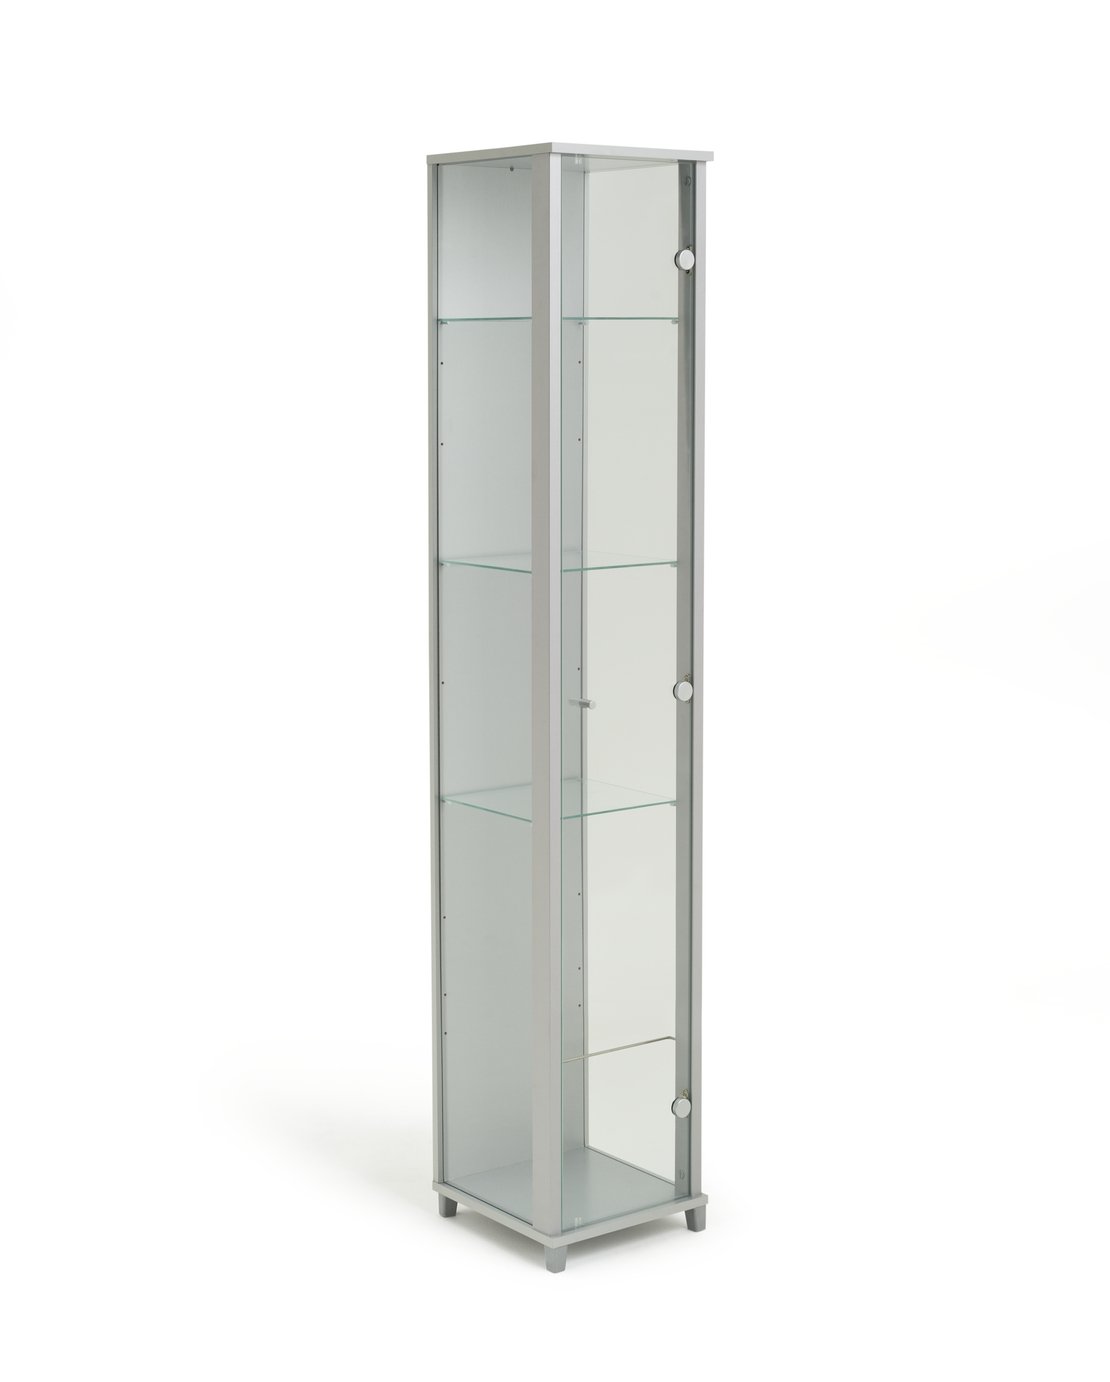 Habitat 1 Door Glass Display Cabinet - Silver